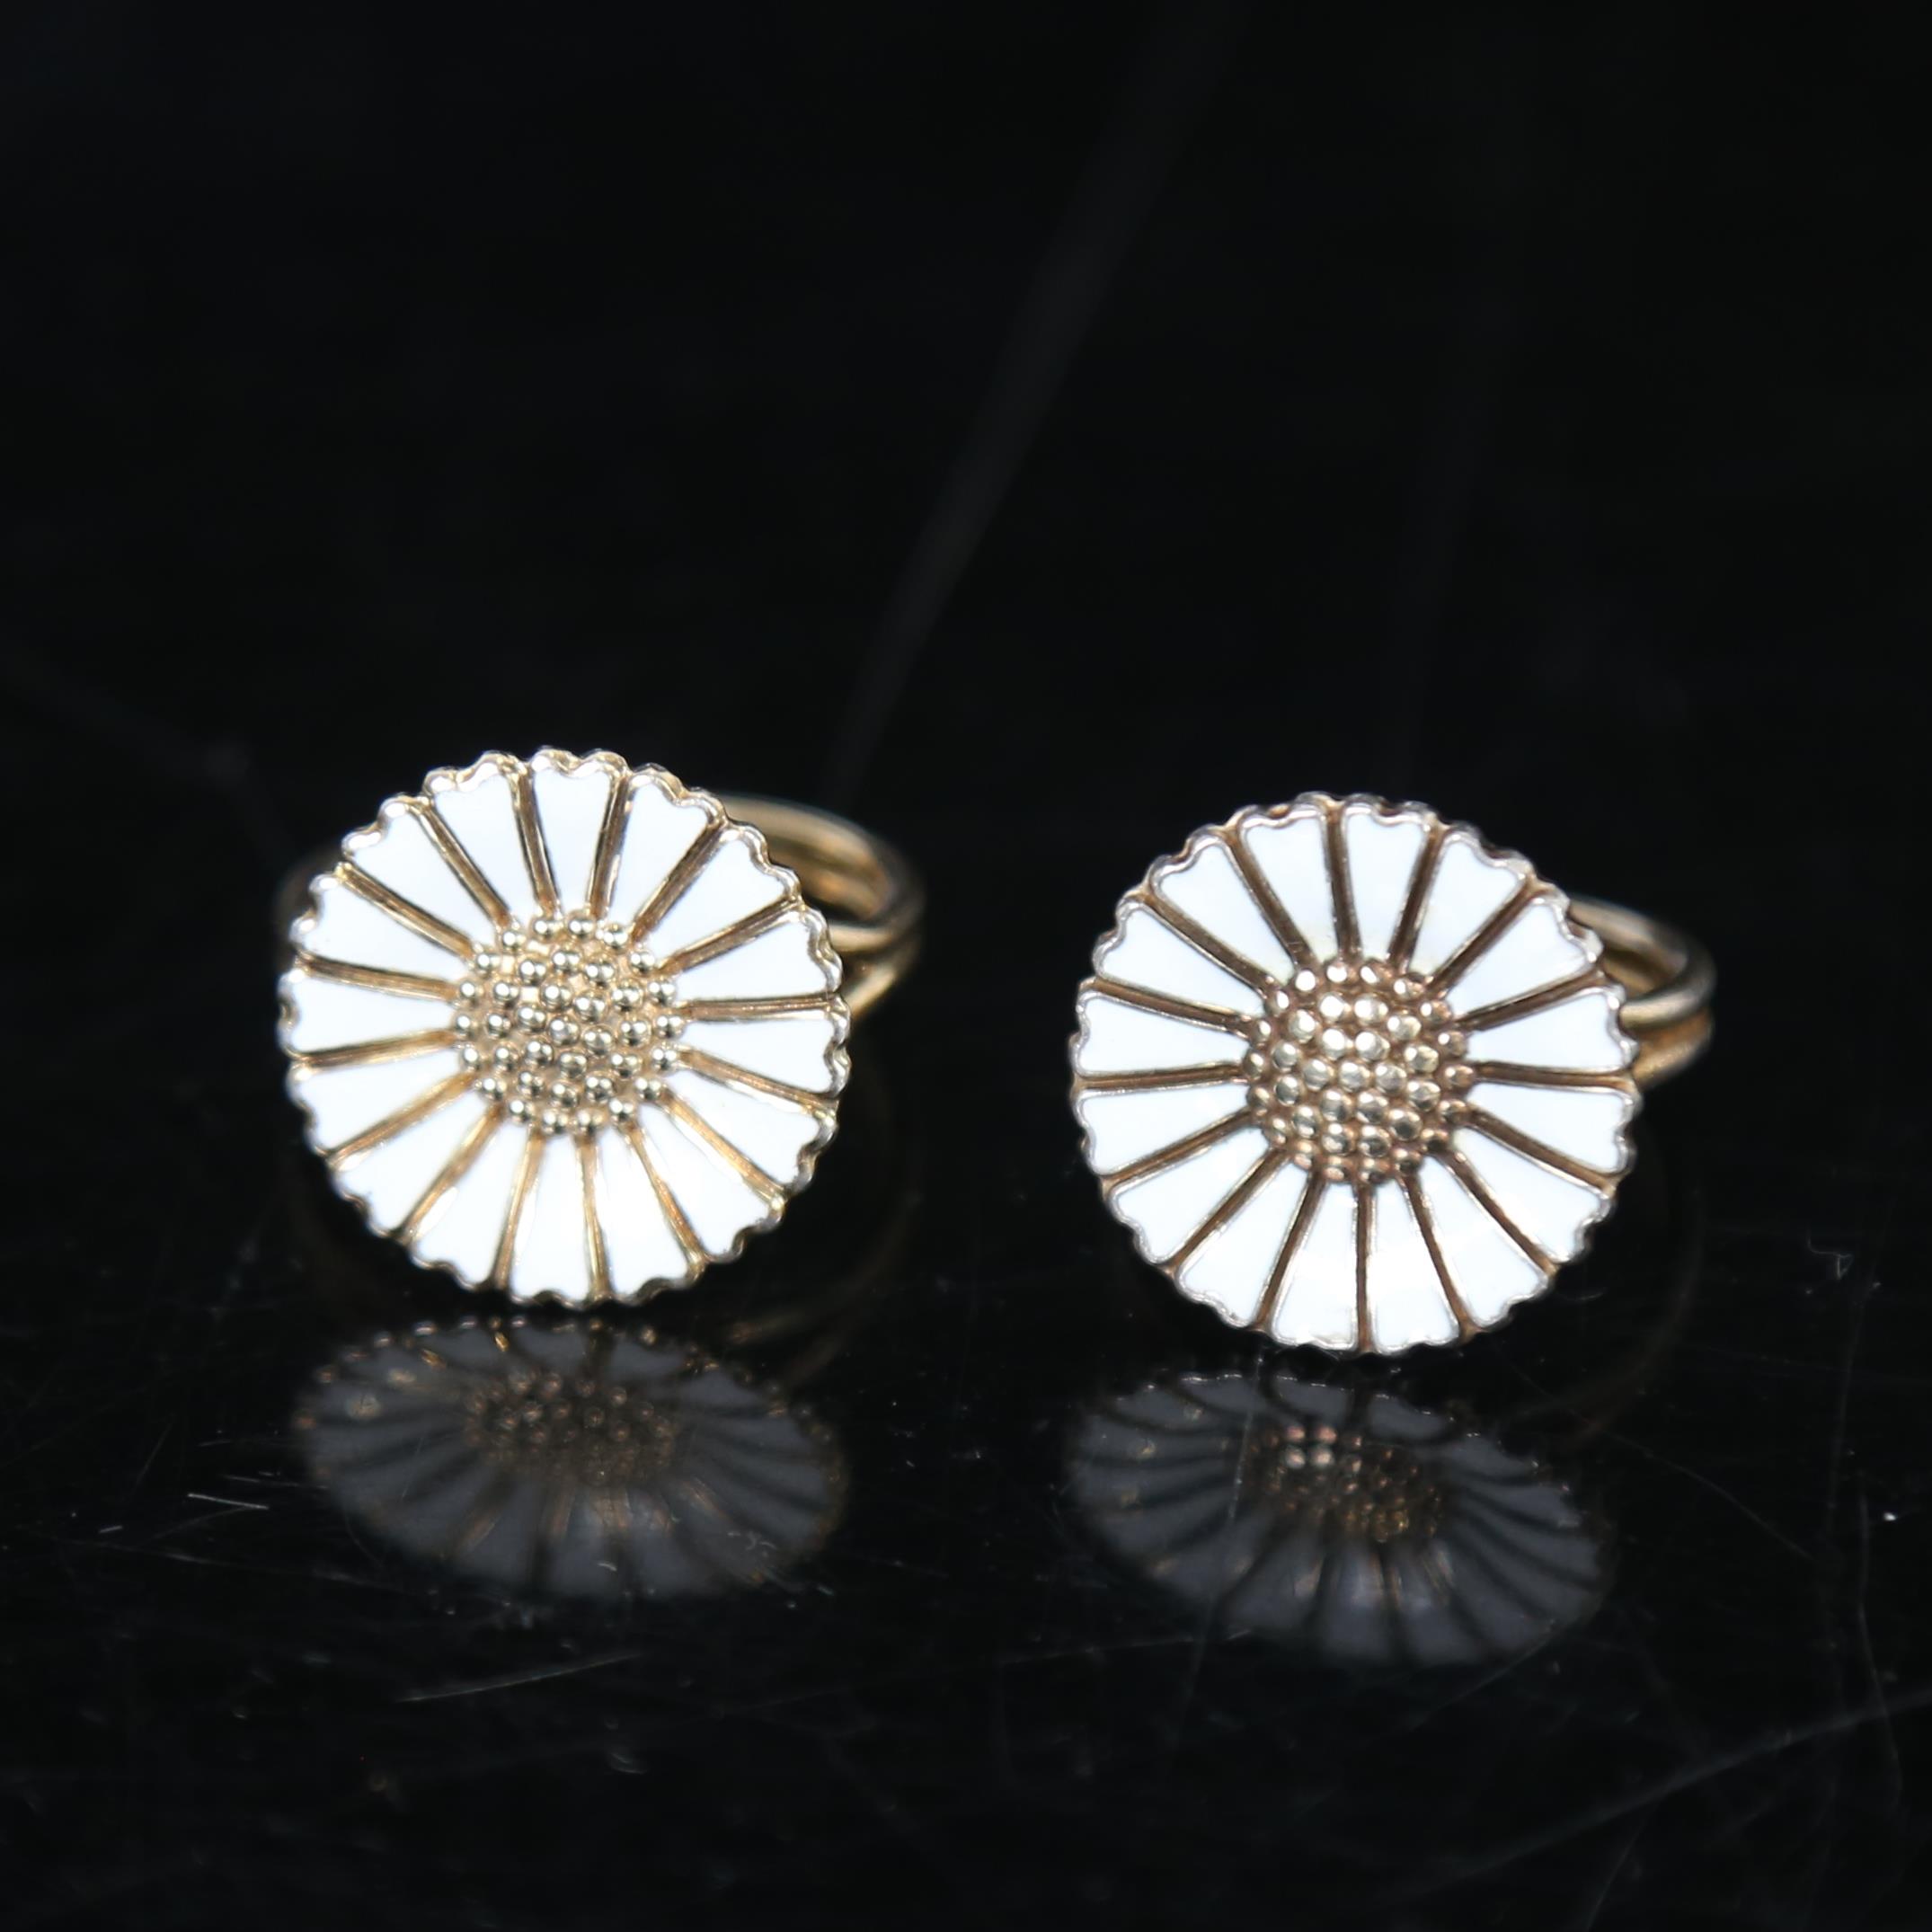 BERNHARD HERTZ - 2 silver and white enamel daisy pattern rings